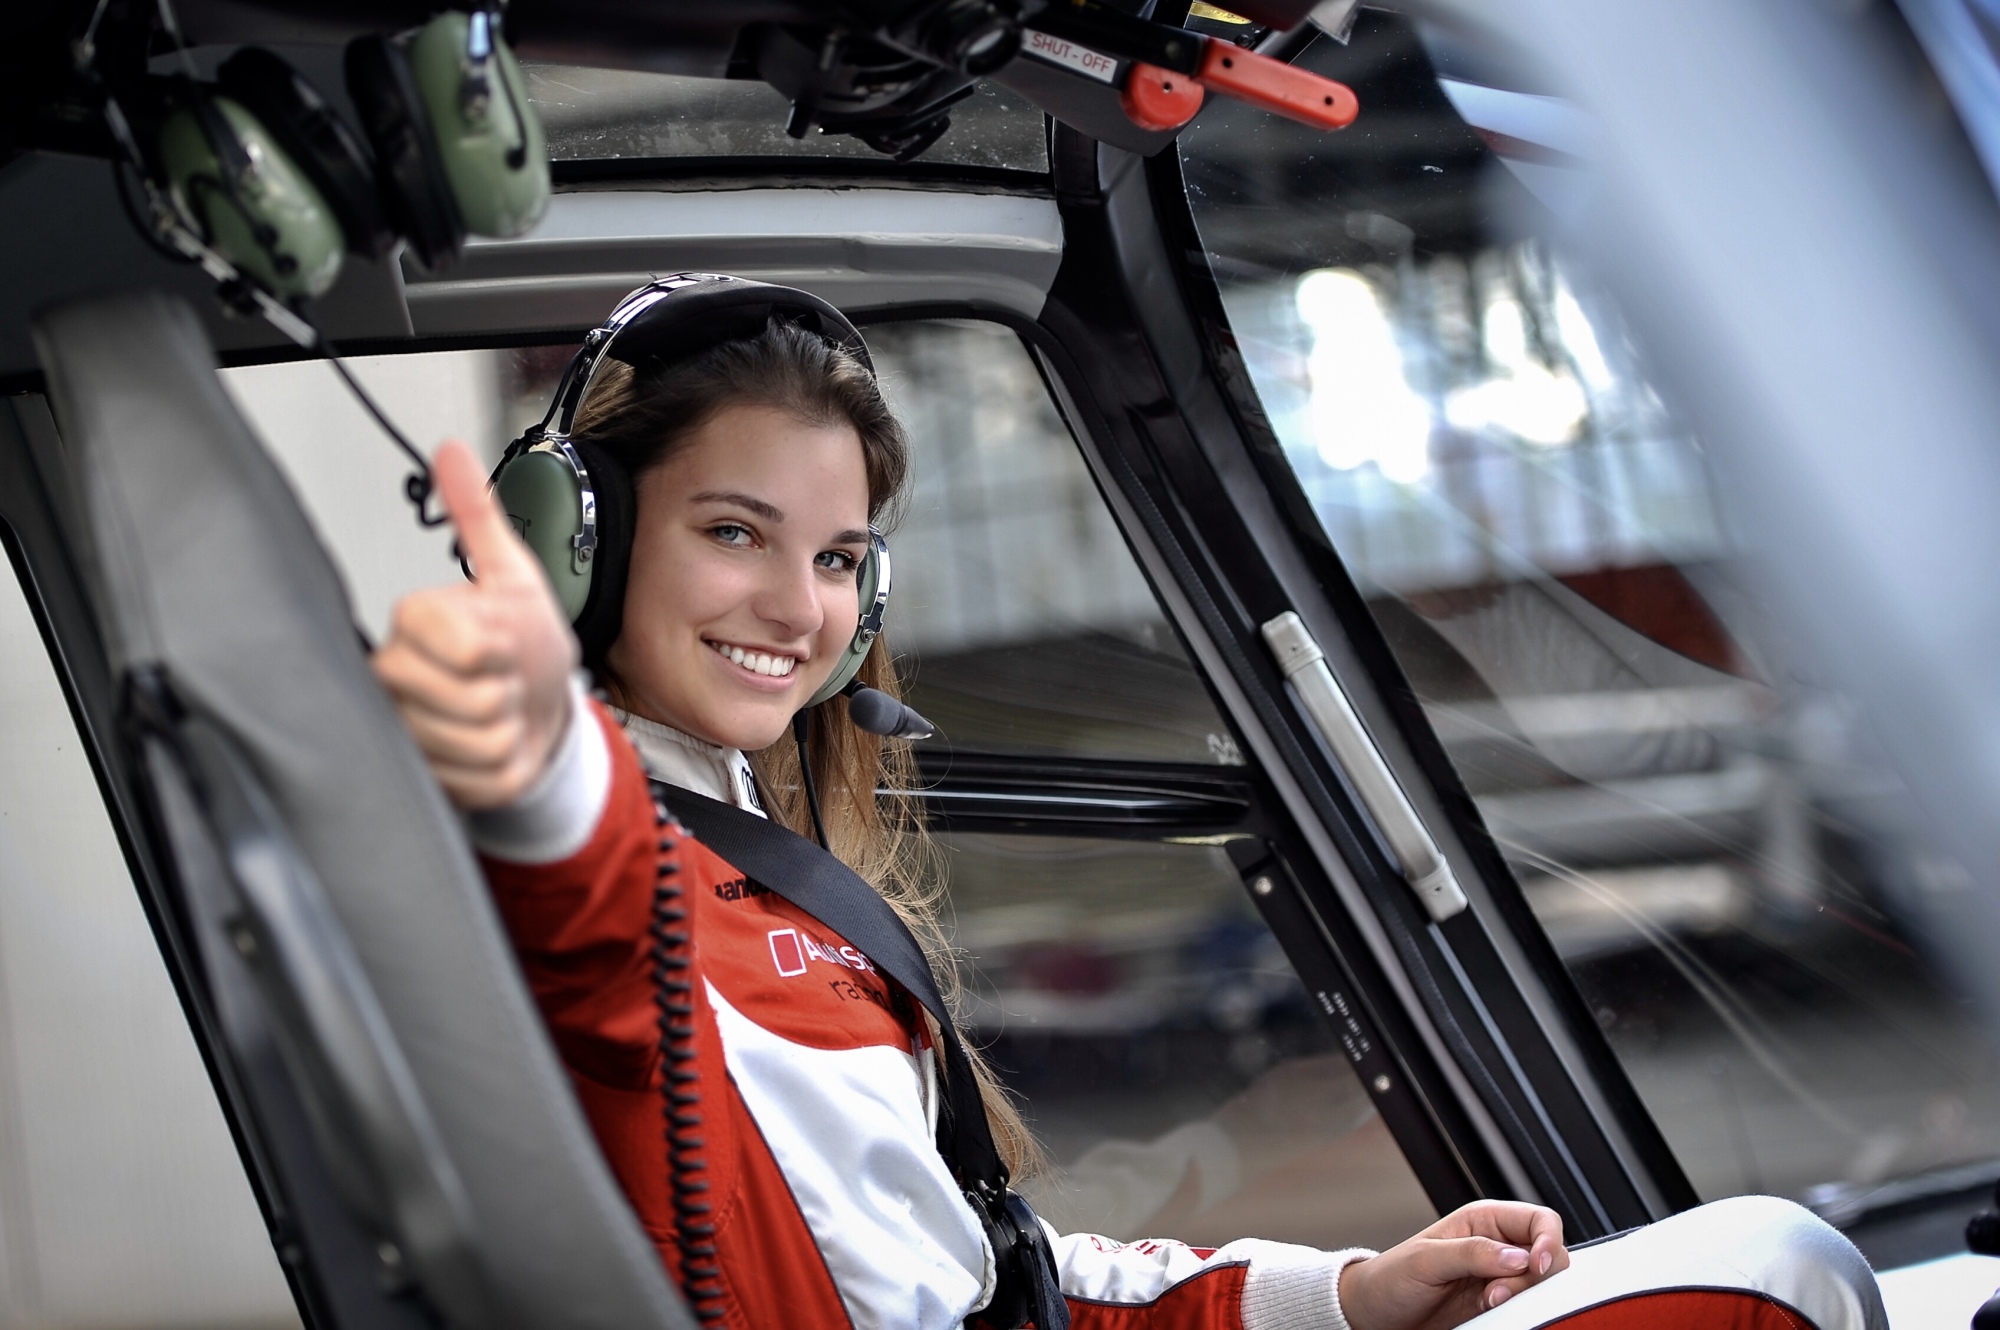 Keszthelyi Vivi Magyarország legfiatalabb női helikoptervezetője is lehet